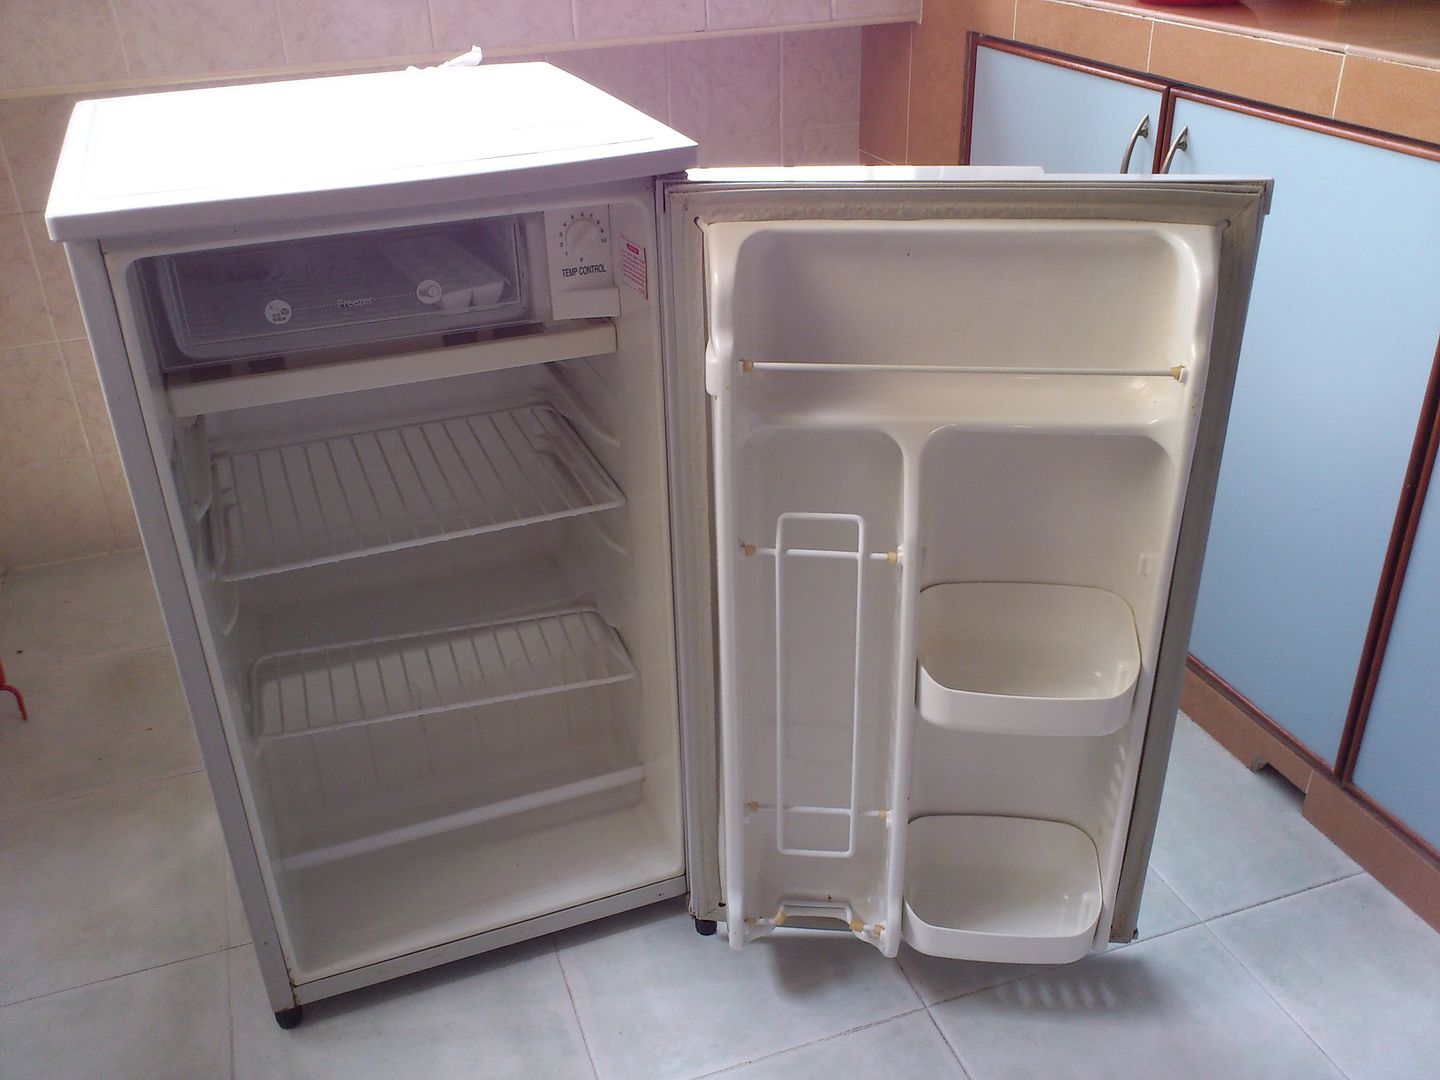 Mini fridge cost singapore airport